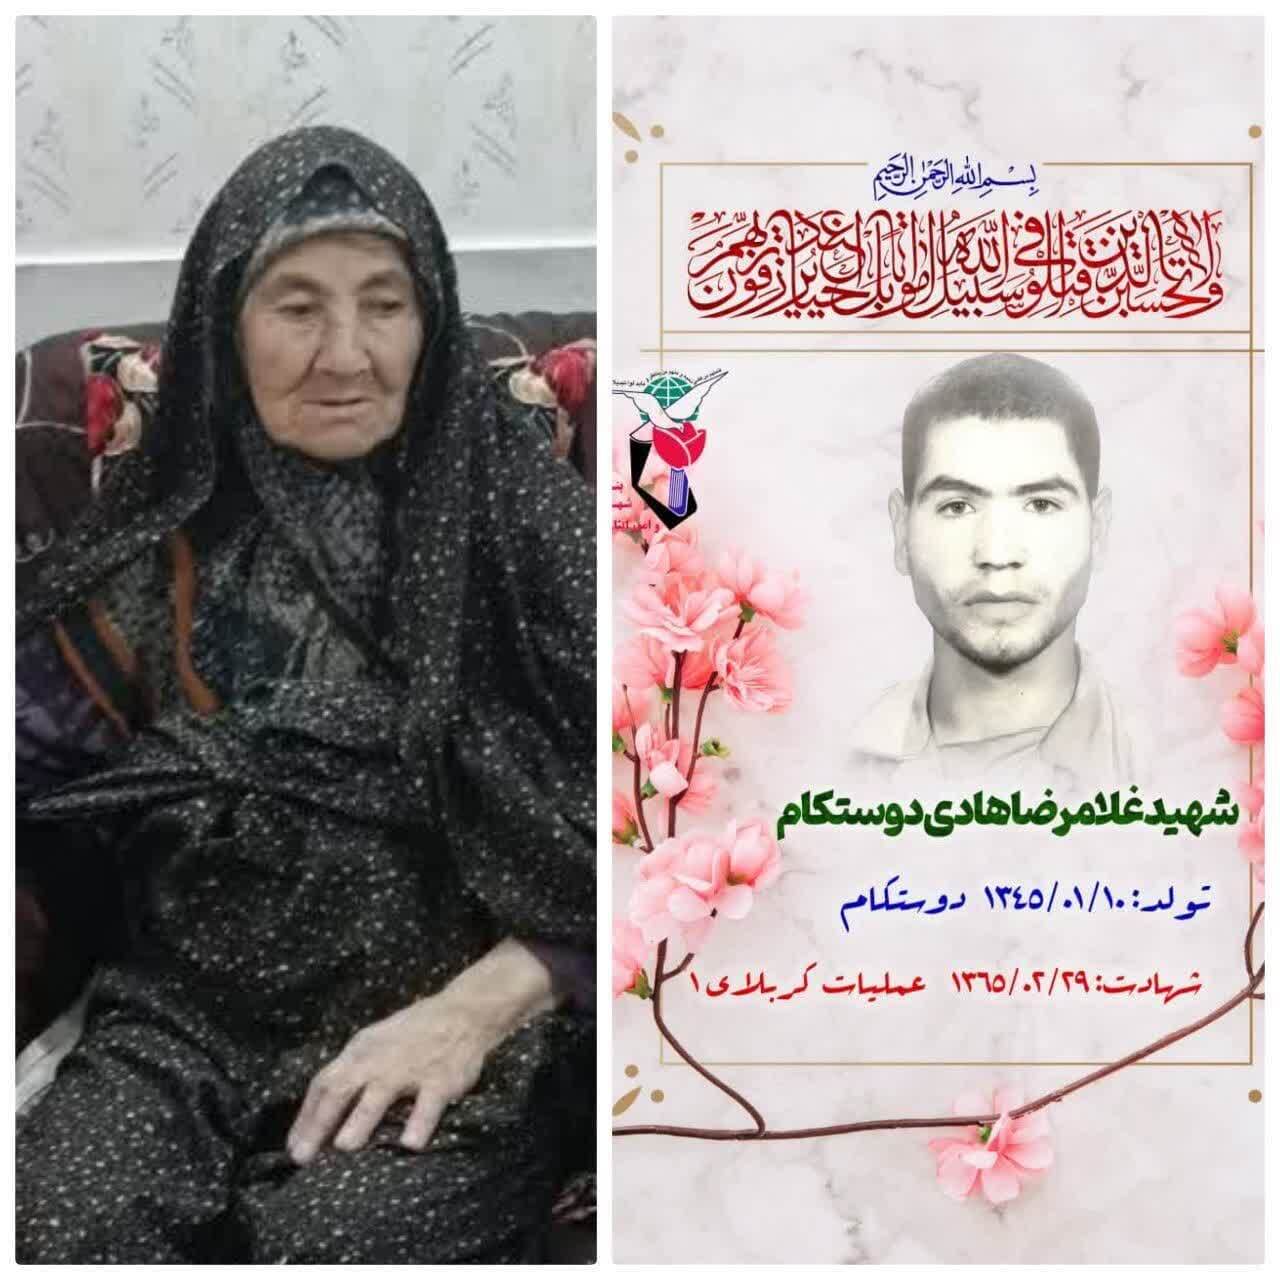 درگذشت مادر شهید غلامرضا هادی دوستکام از بخش جلگه ماژان خوسف،